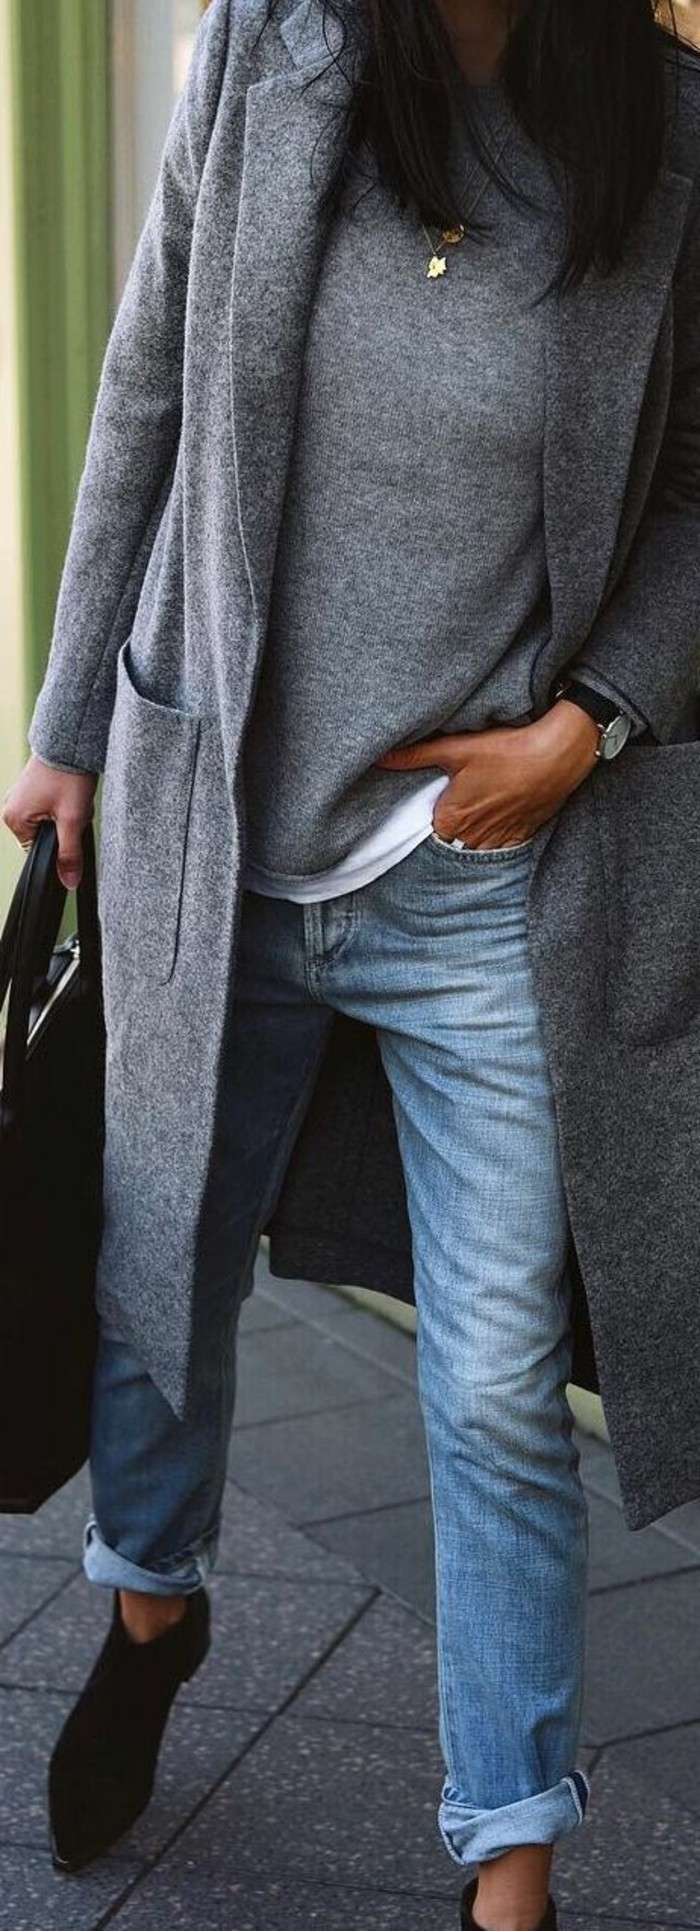 šedý kabát outfit zimní móda trendy kabát dlouho